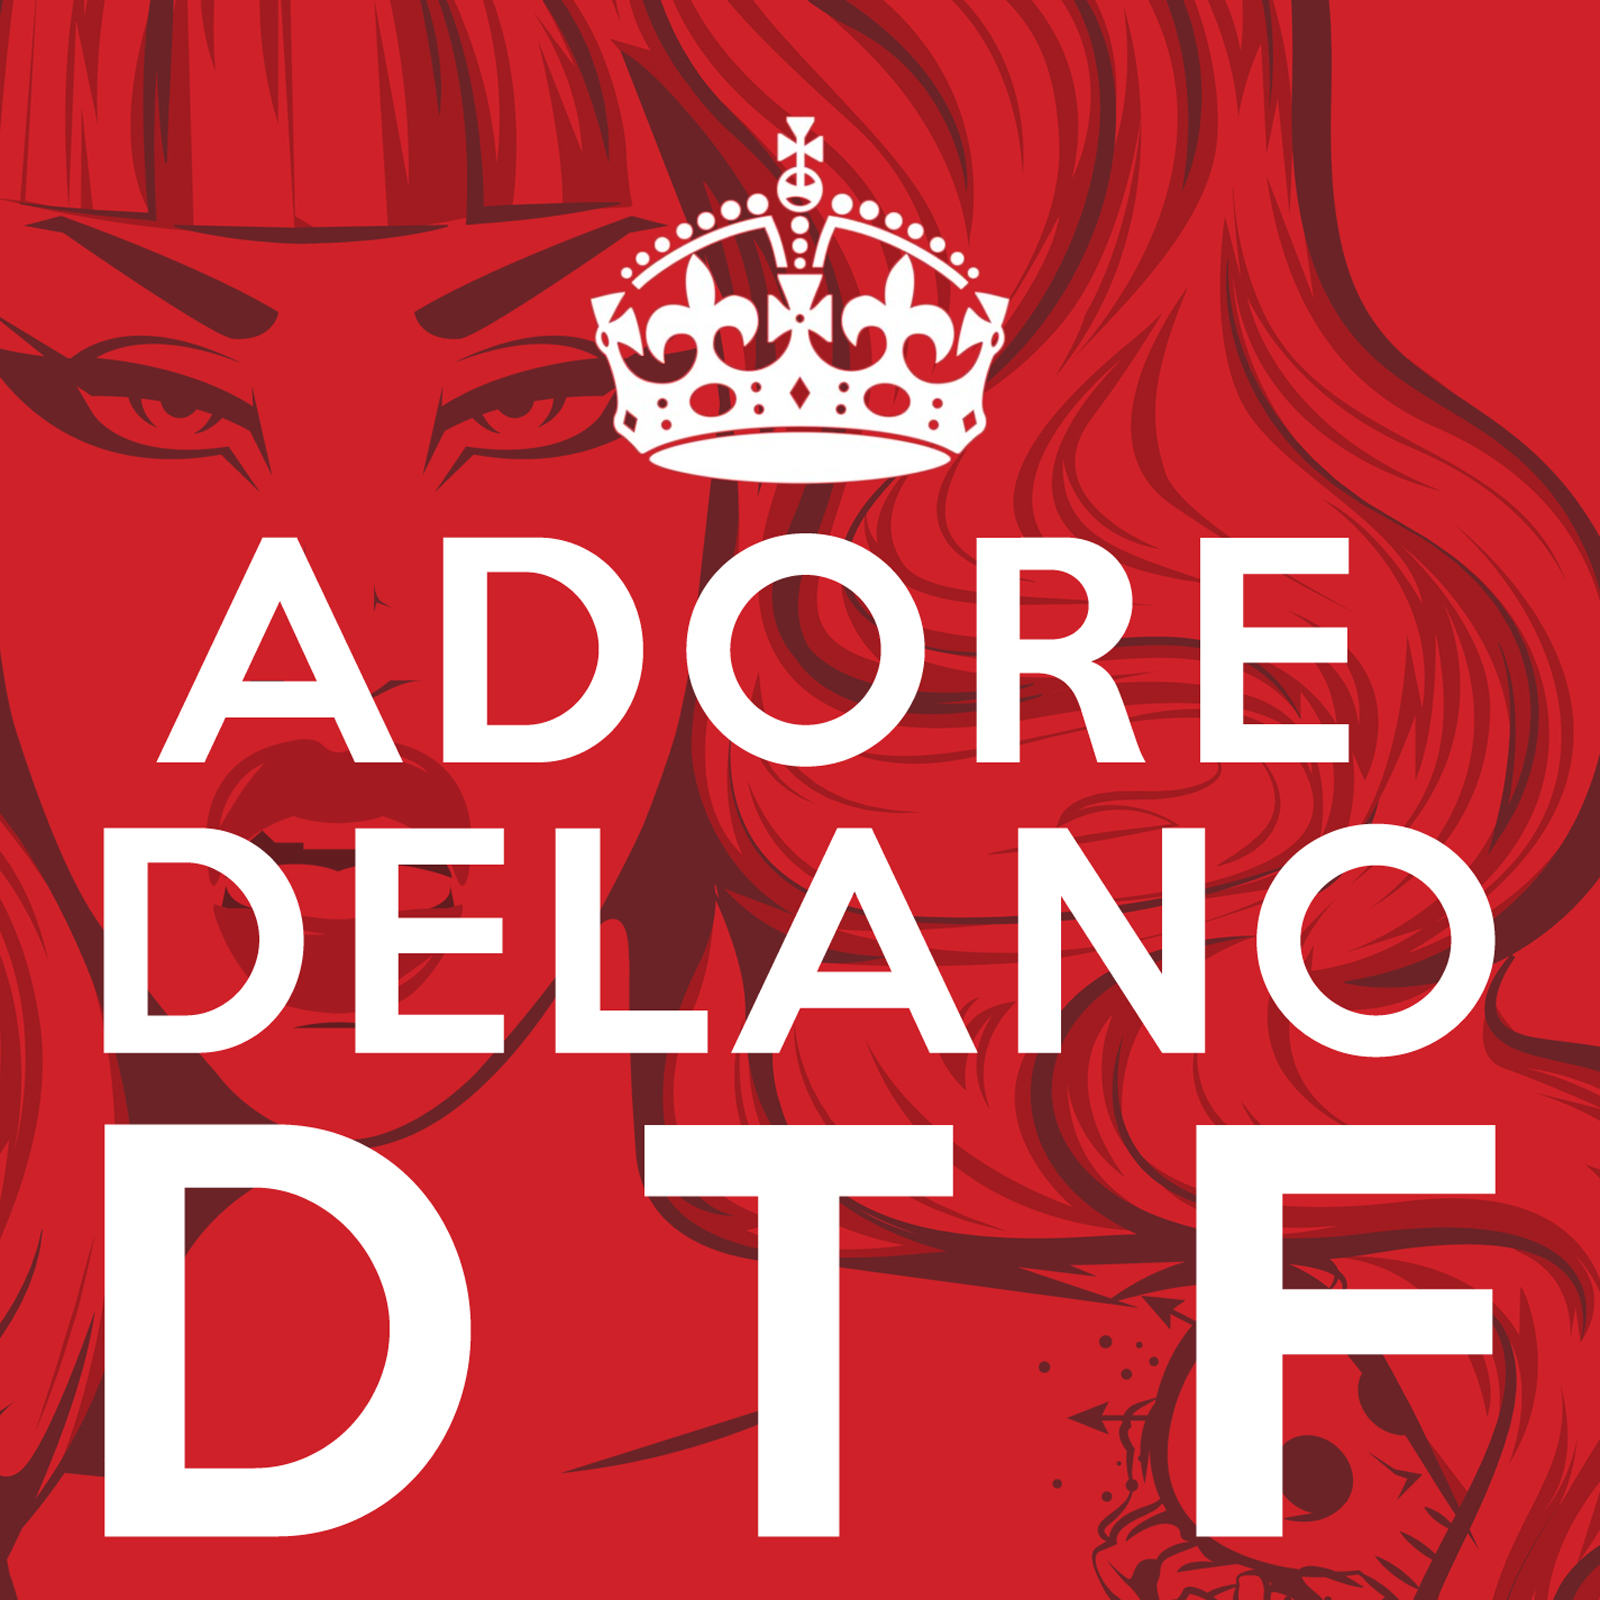  Adore Delano – DTF (Official)